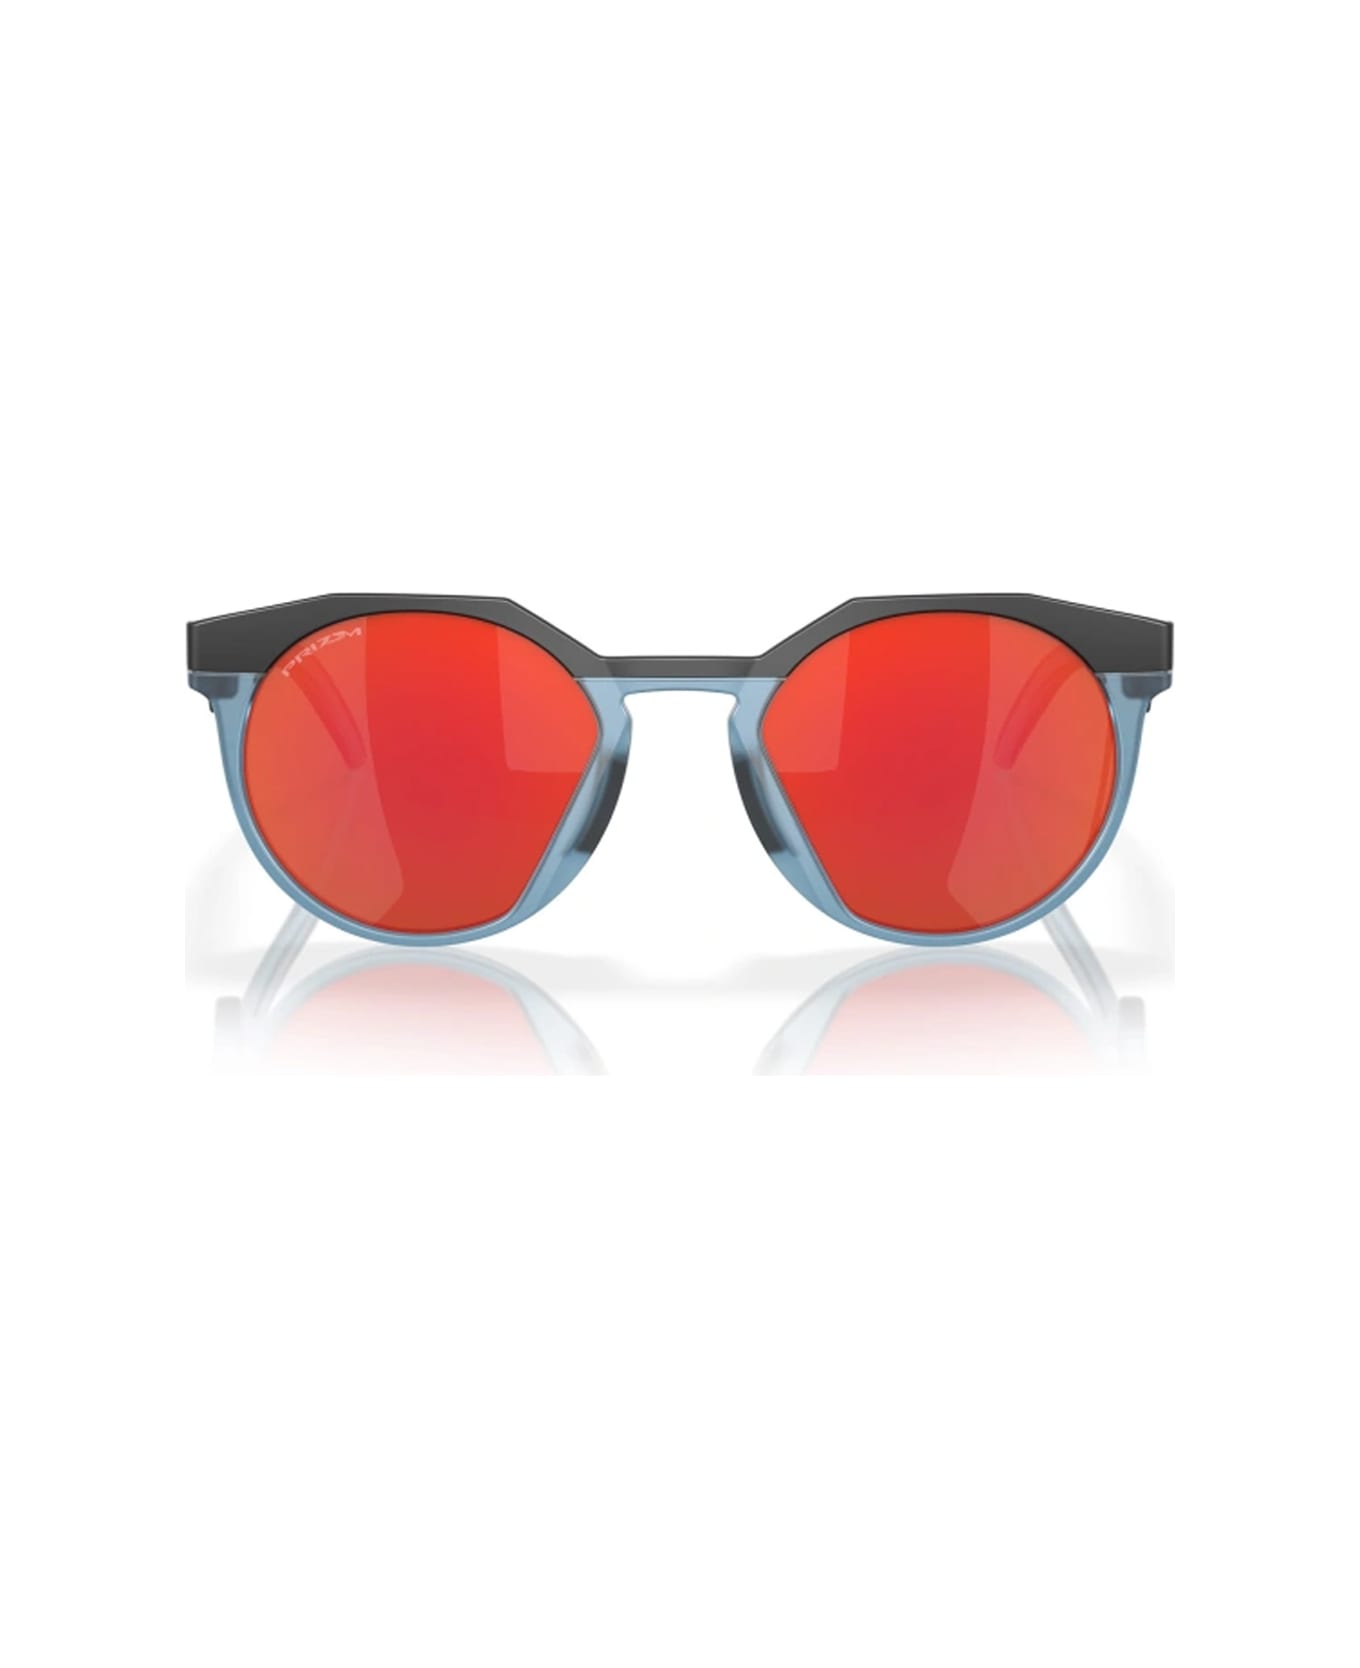 Oakley Oo9242 924208 Sunglasses - Nero